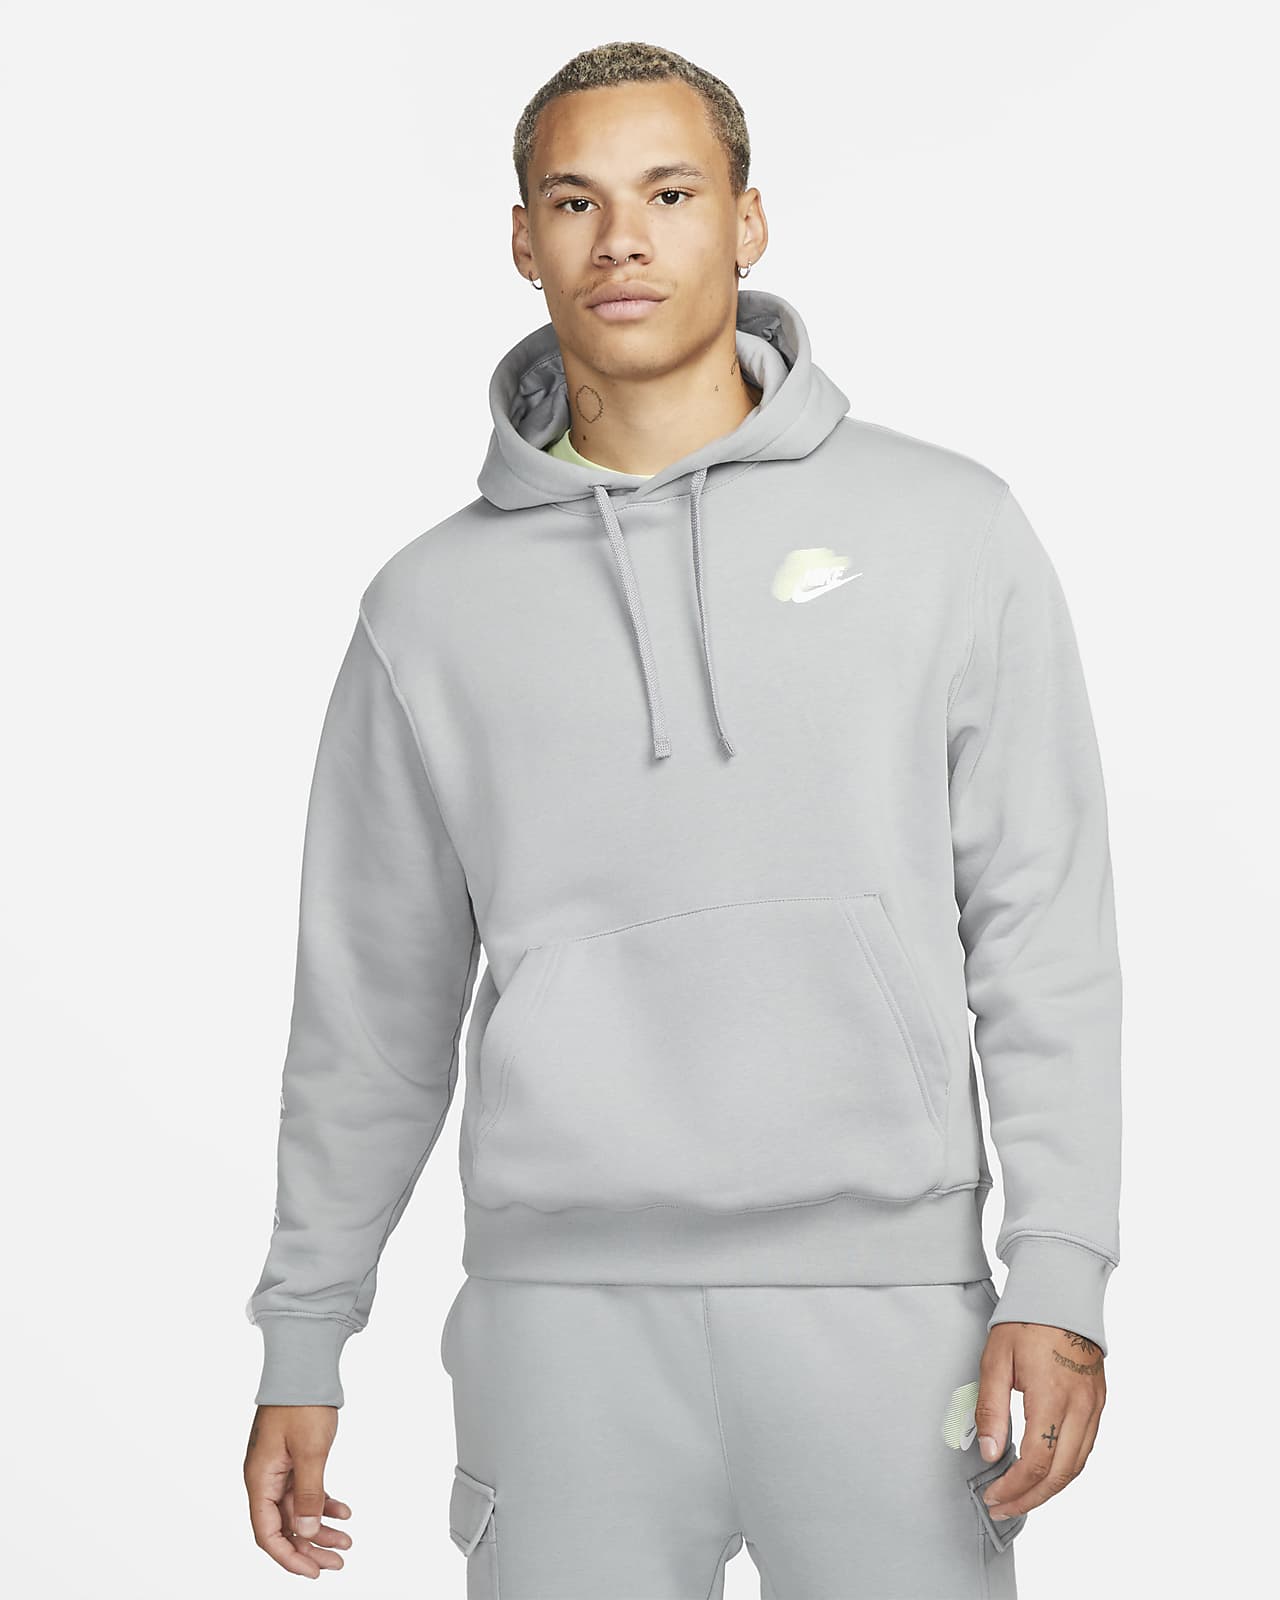 dubbele ui De lucht Nike Sportswear Standard Issue Men's Fleece Pullover Hoodie. Nike FI